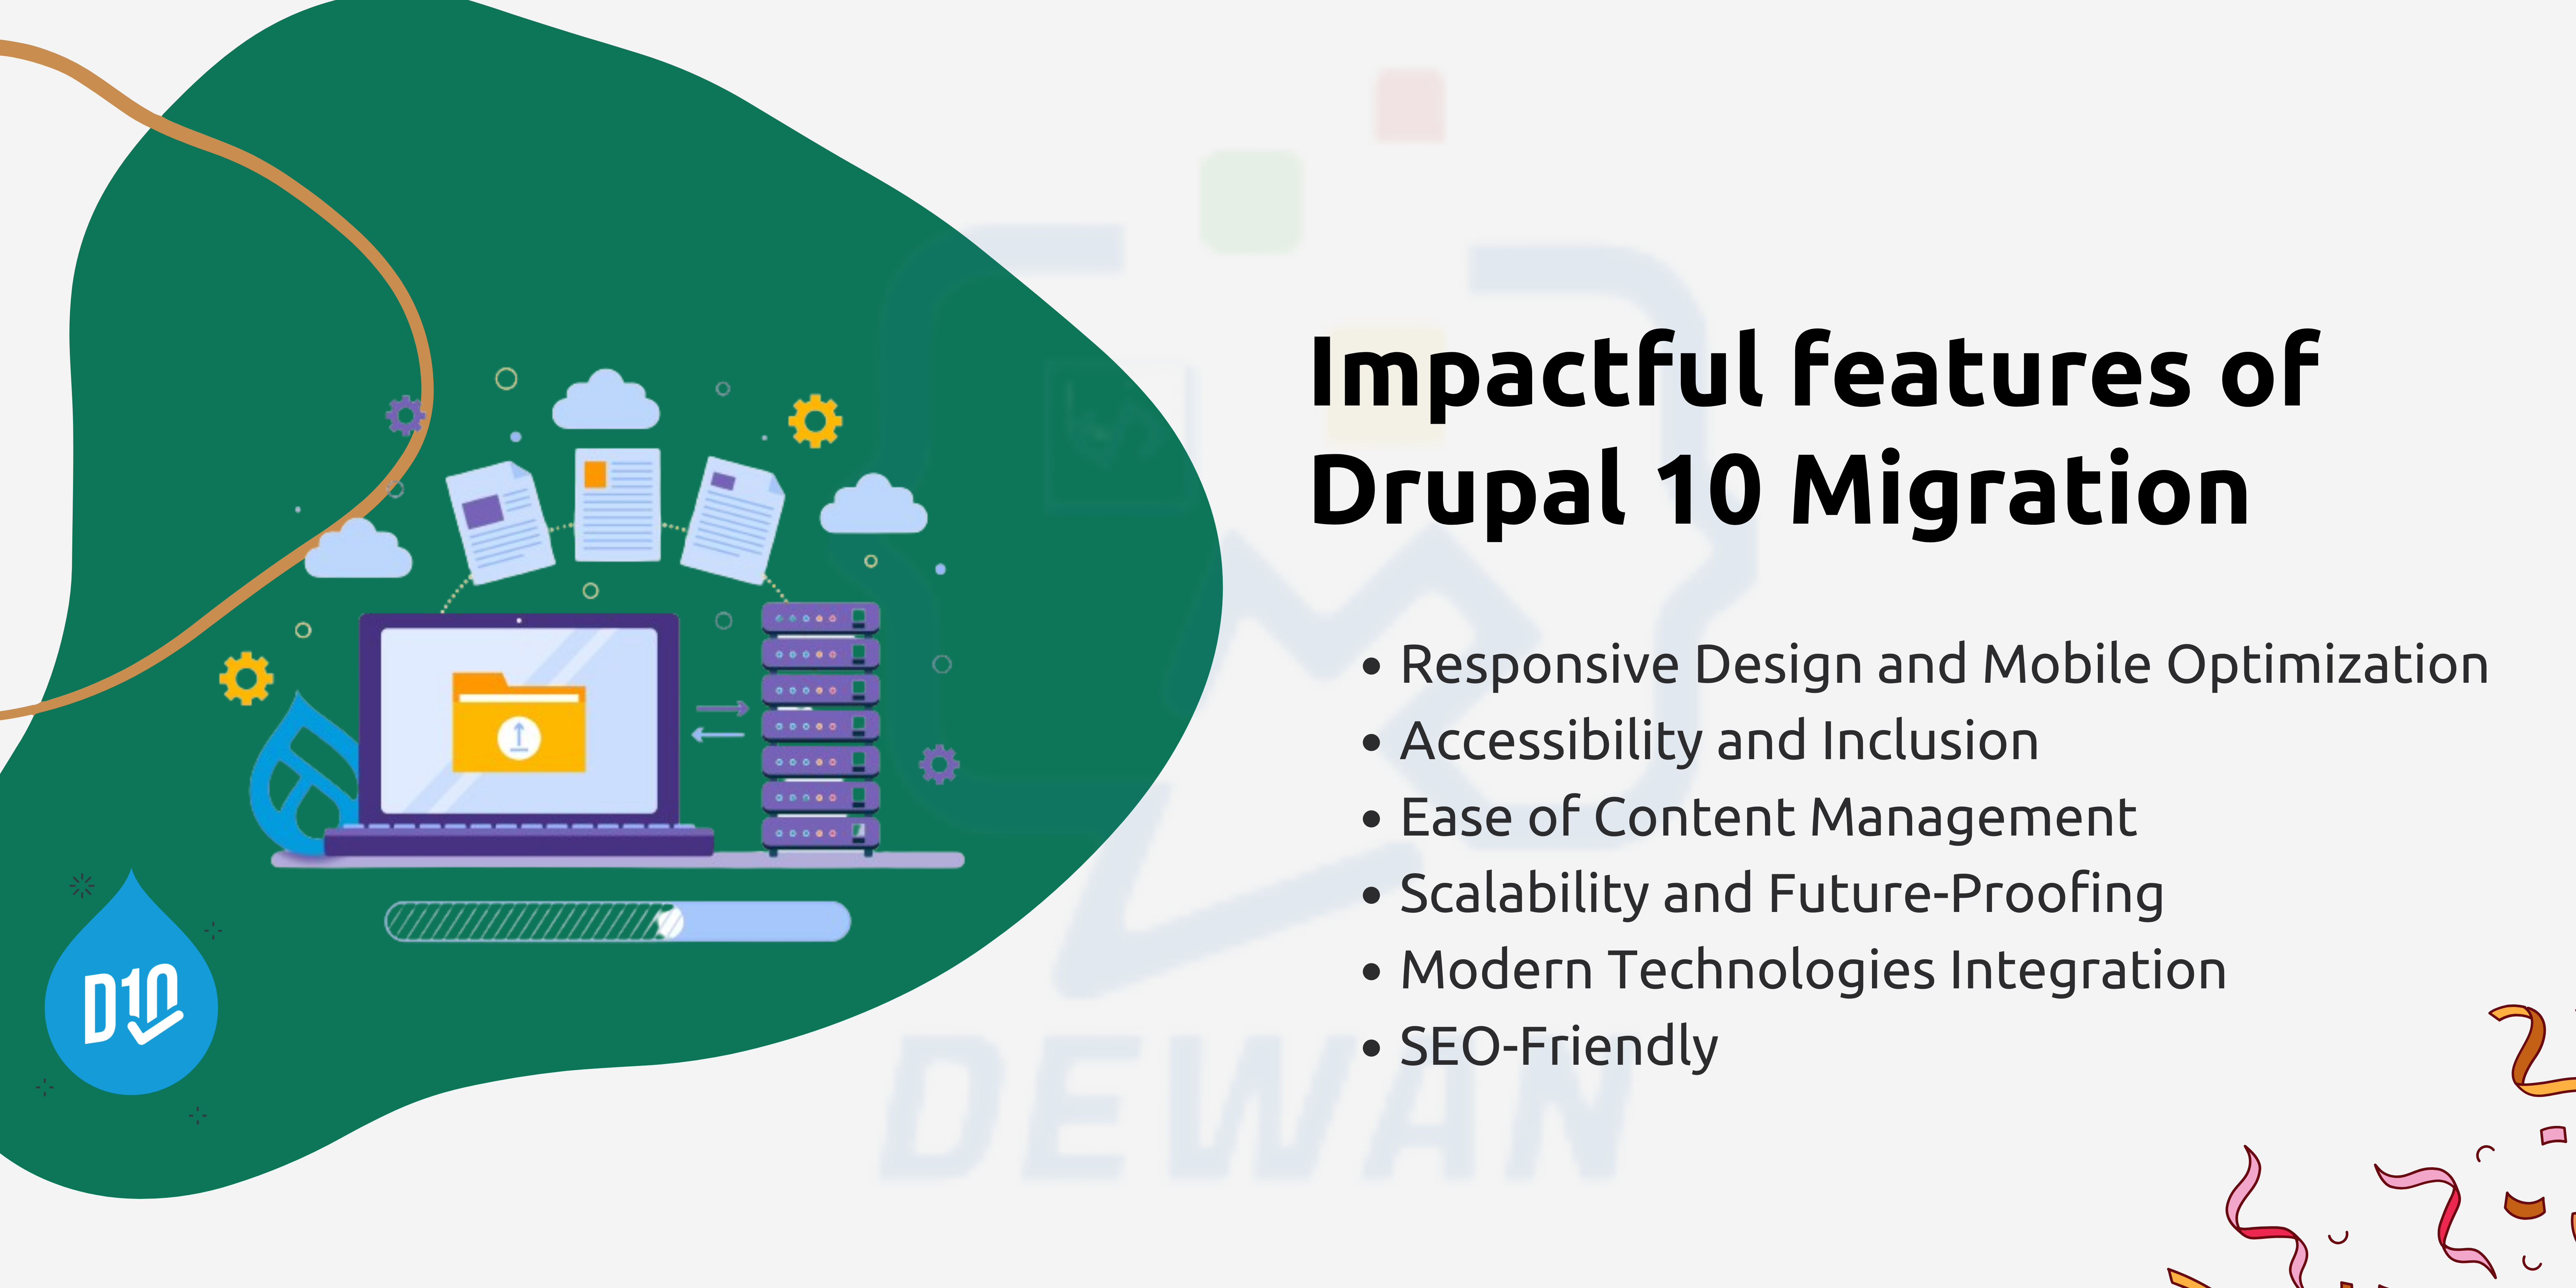 Benefits of Drupal 10 Migration